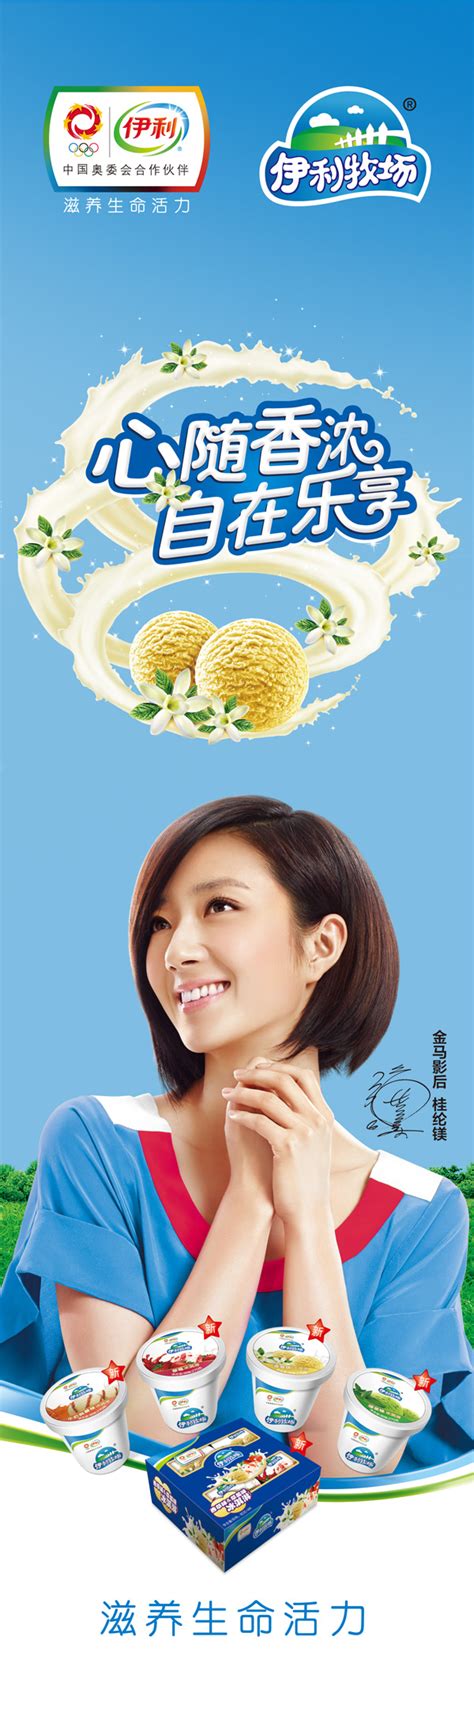 伊利牛奶广告_素材中国sccnn.com